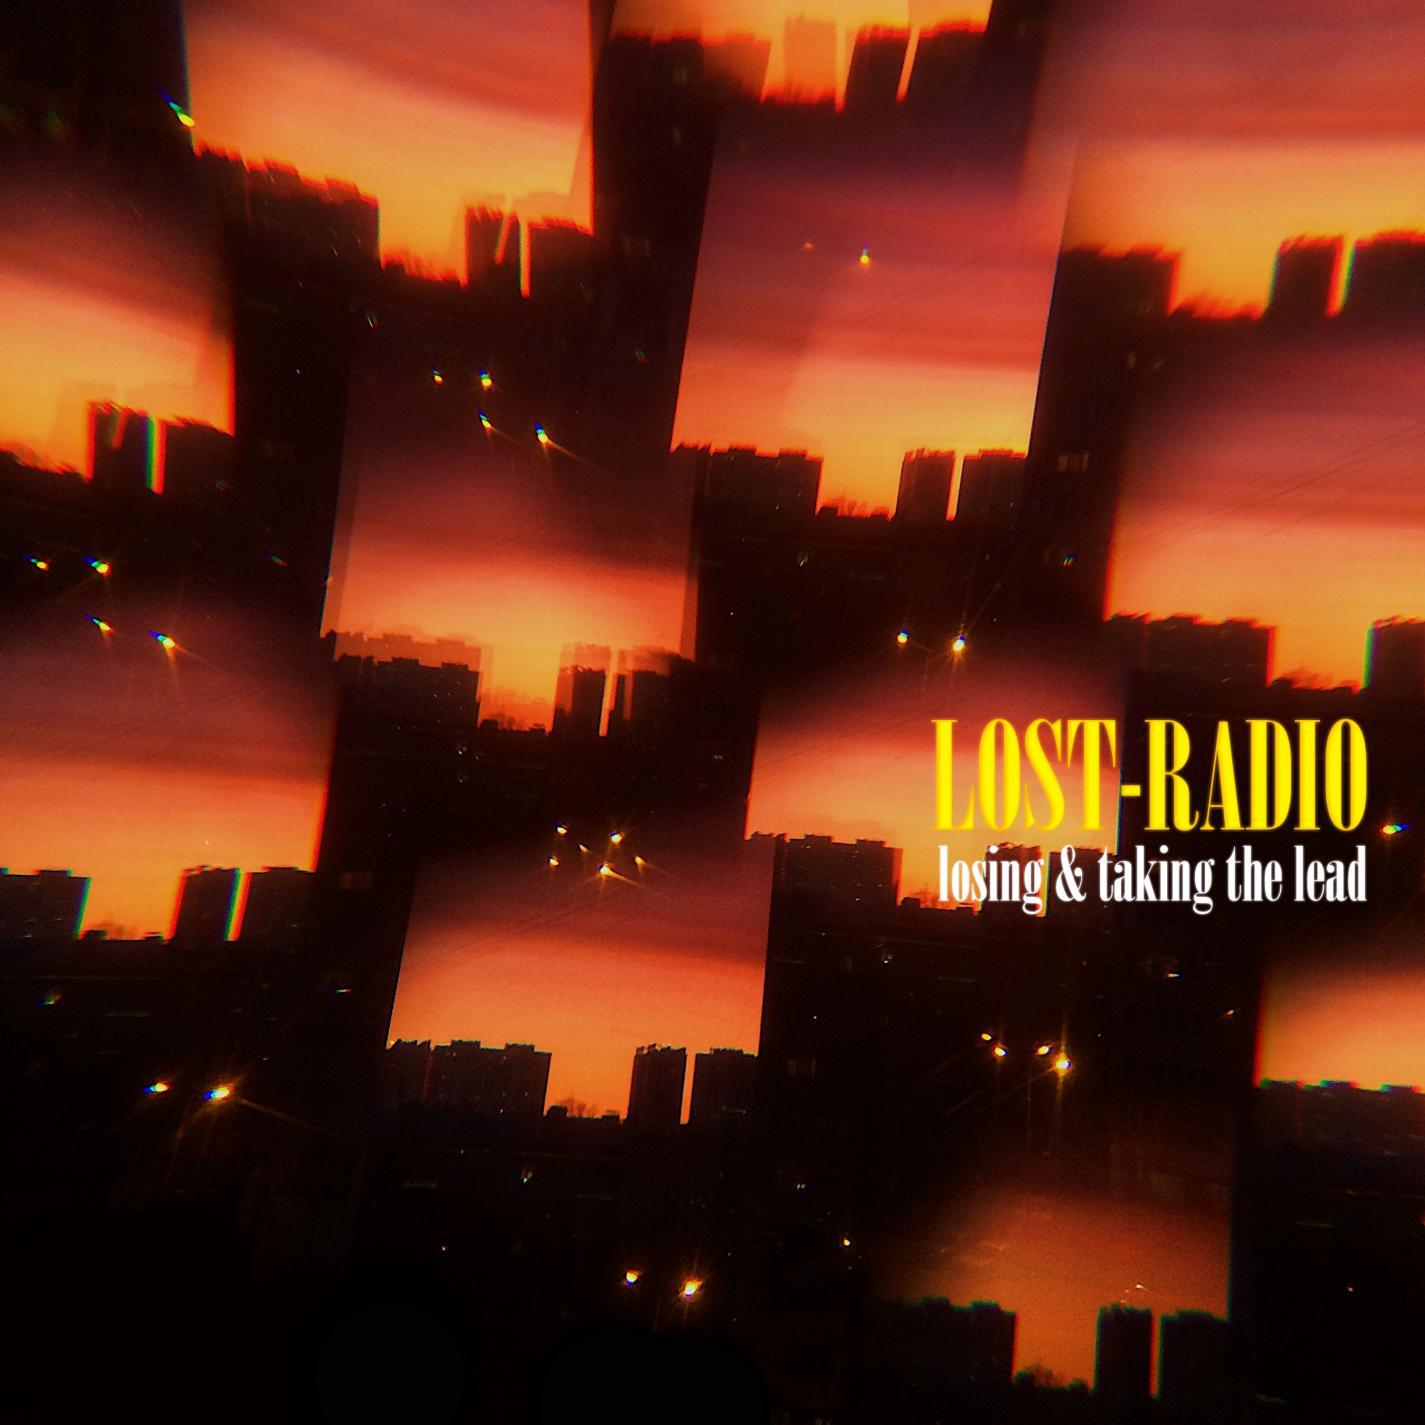 Lost-Radio - hope island